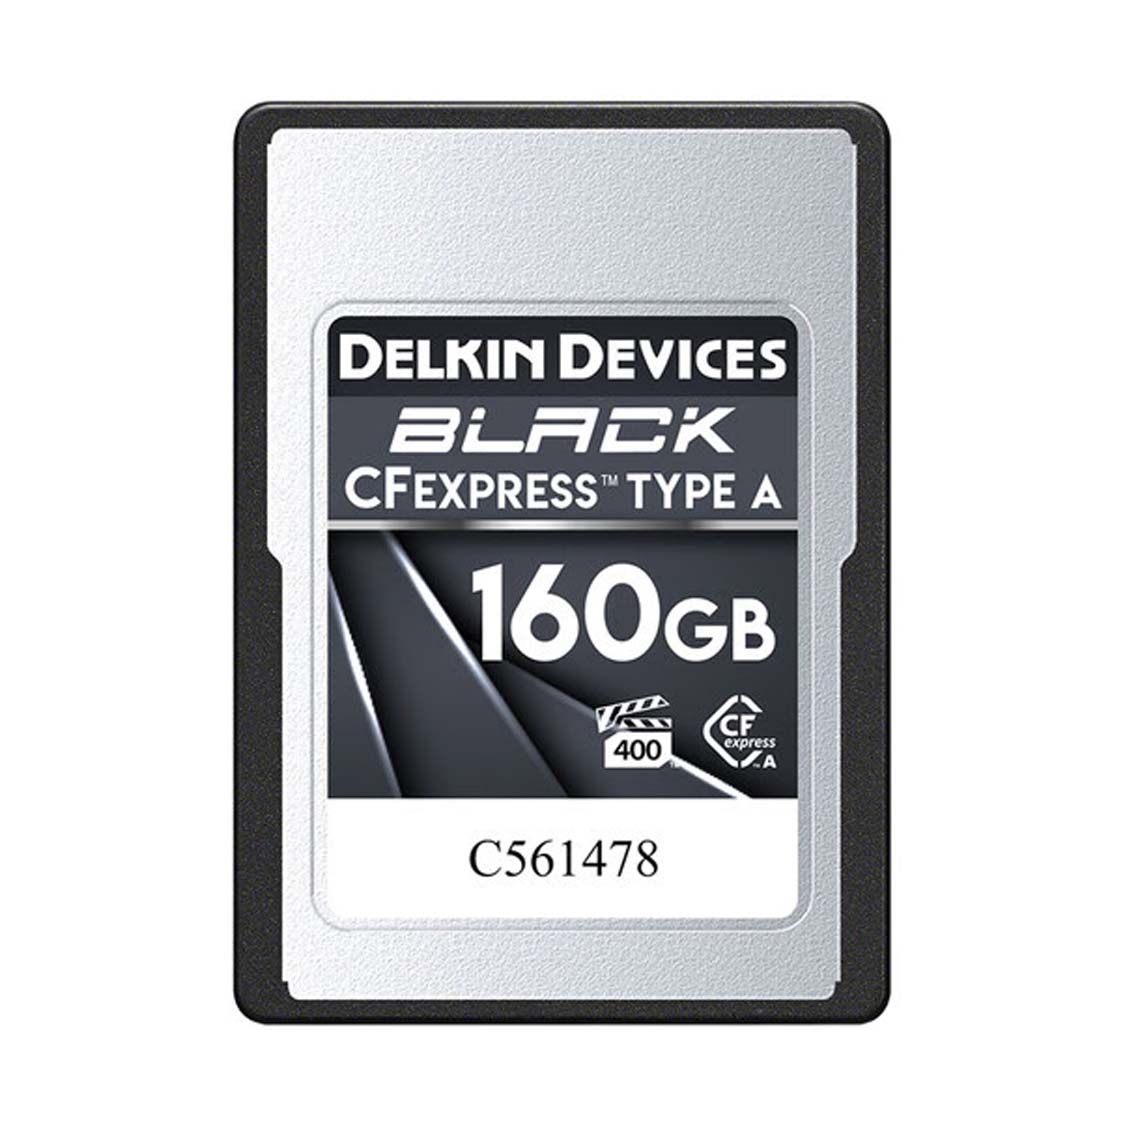 Delkin Black CFExpress 160GB Type A | McBain Camera